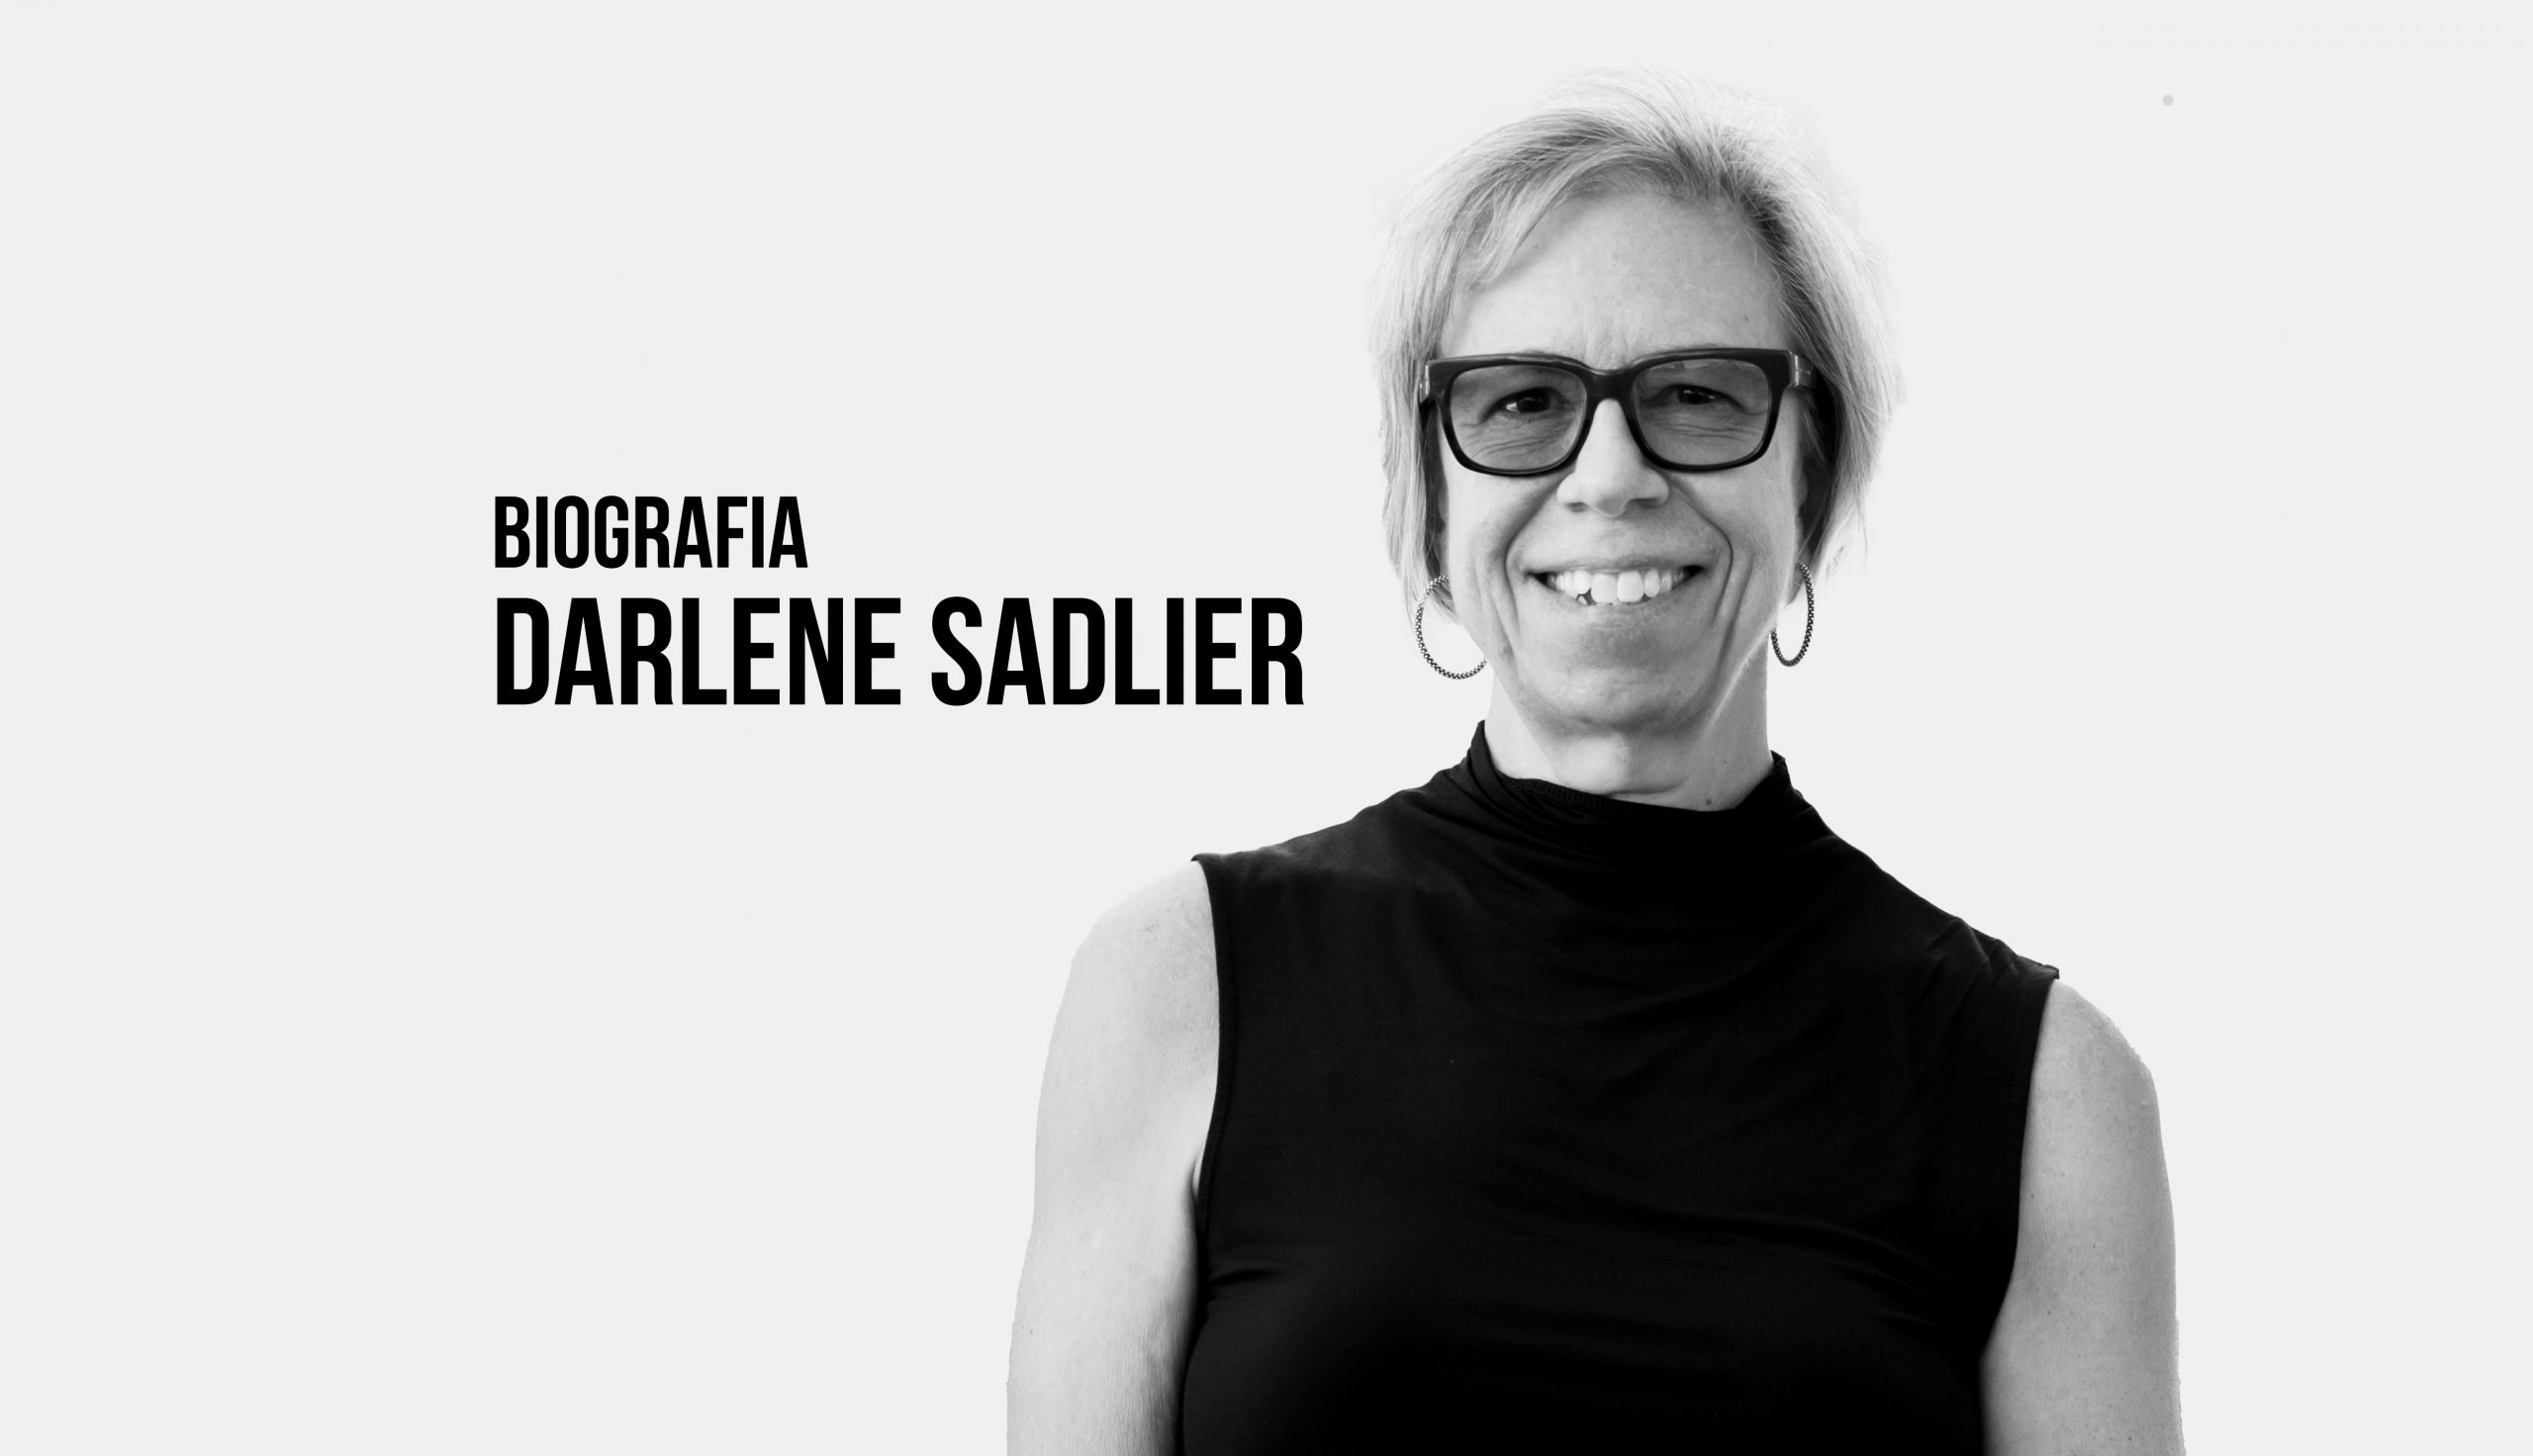 Darlene J. Sadlier